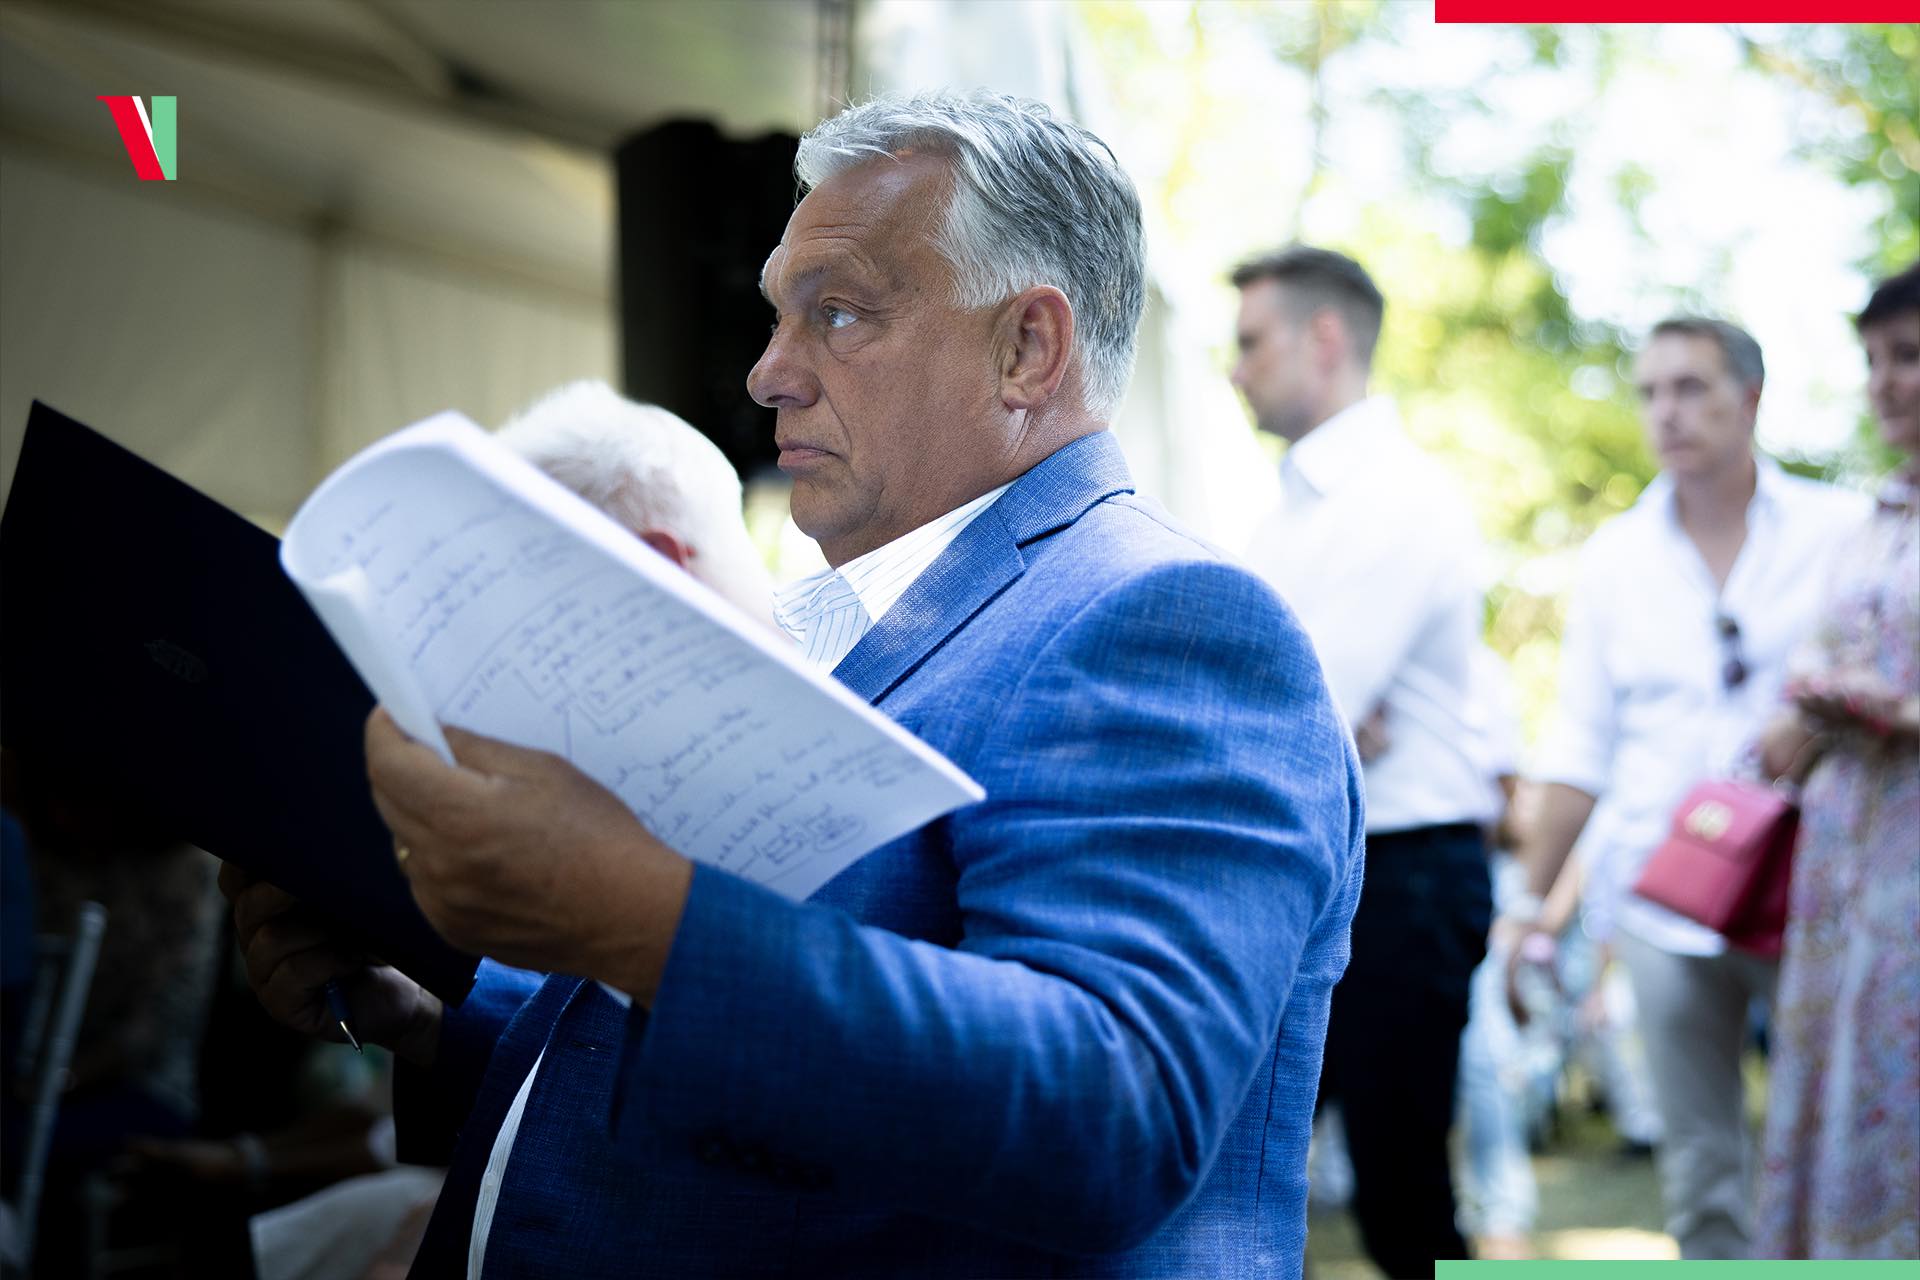 2034, avagy Orbán tervez…